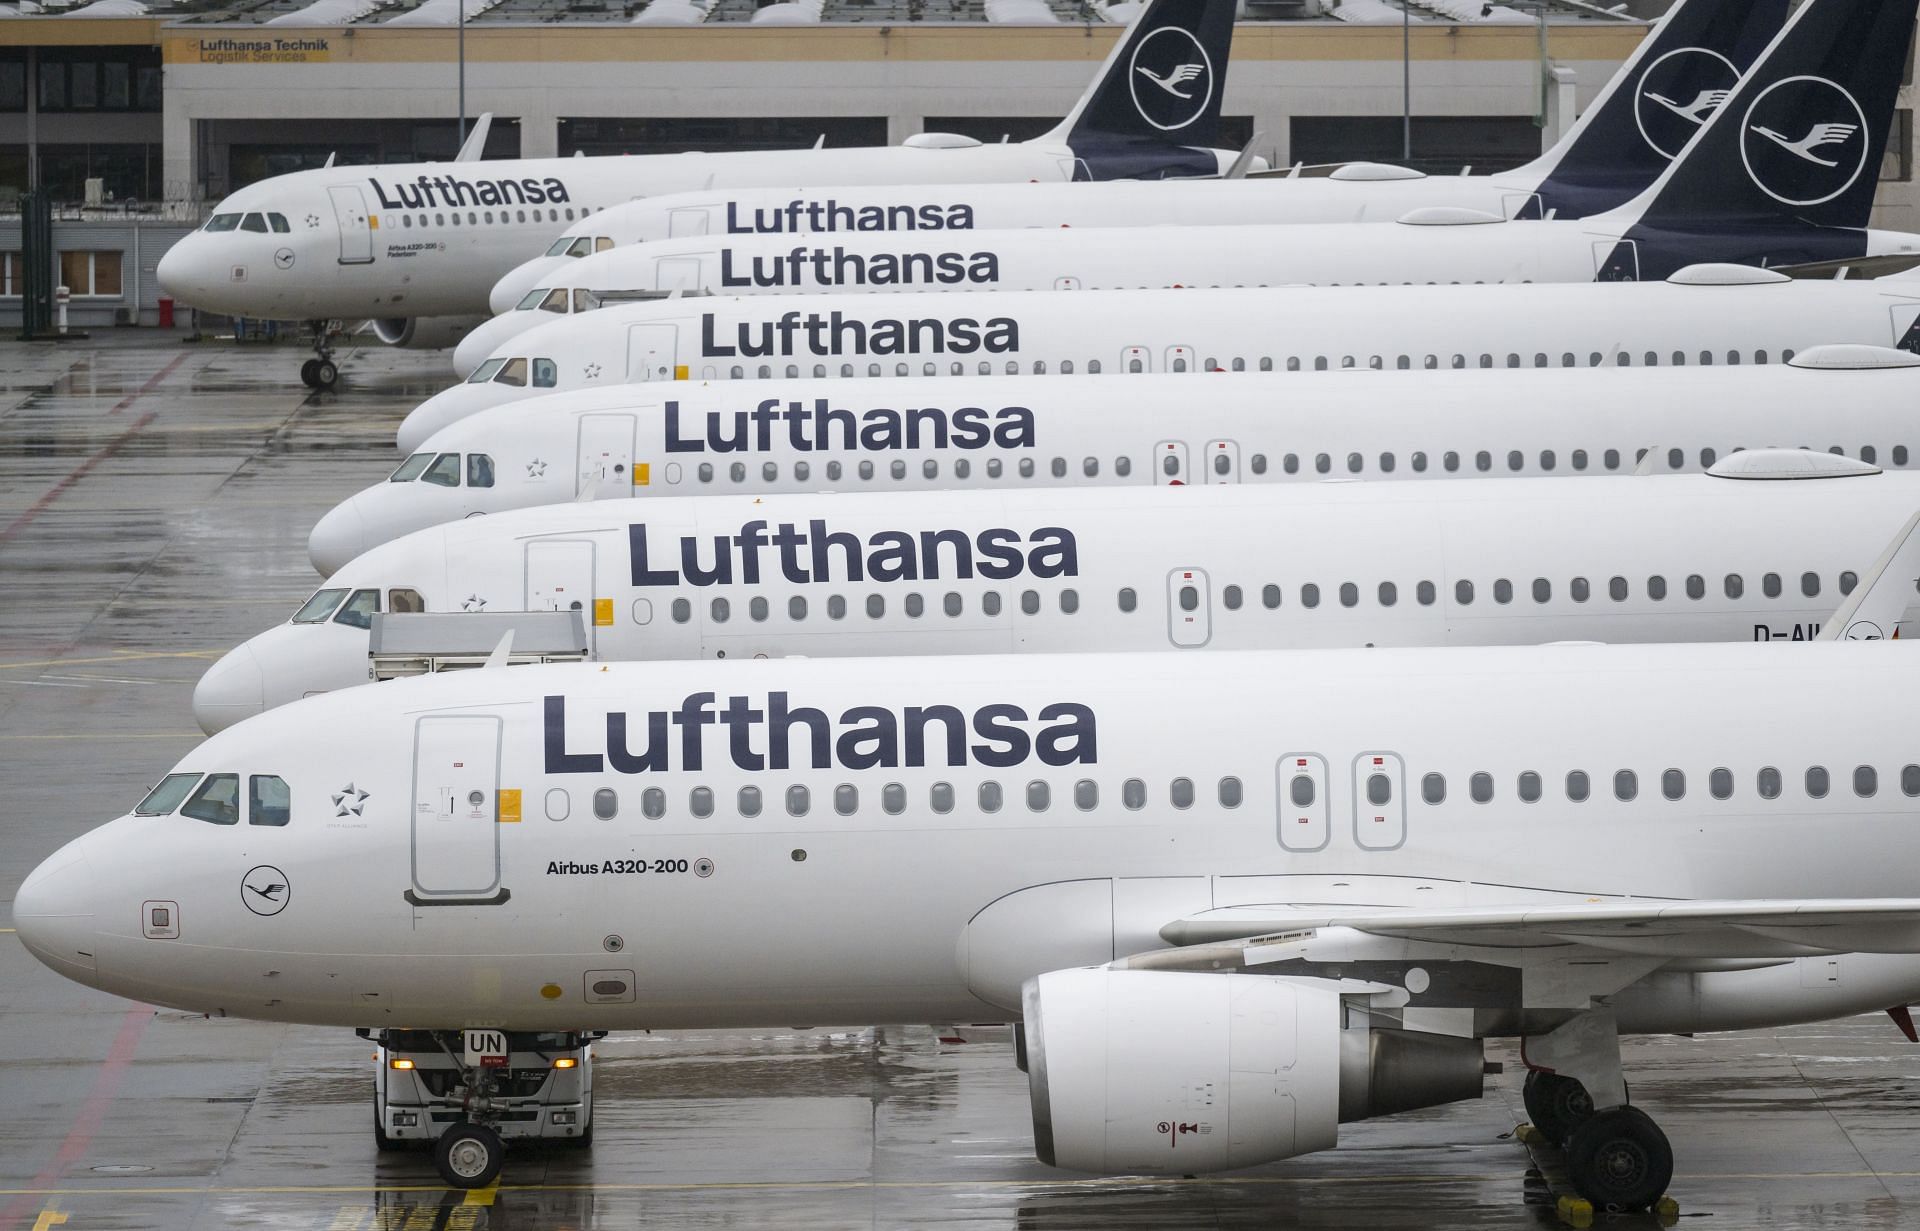 Lufthansa Ground Crews Go On One-Day Strike